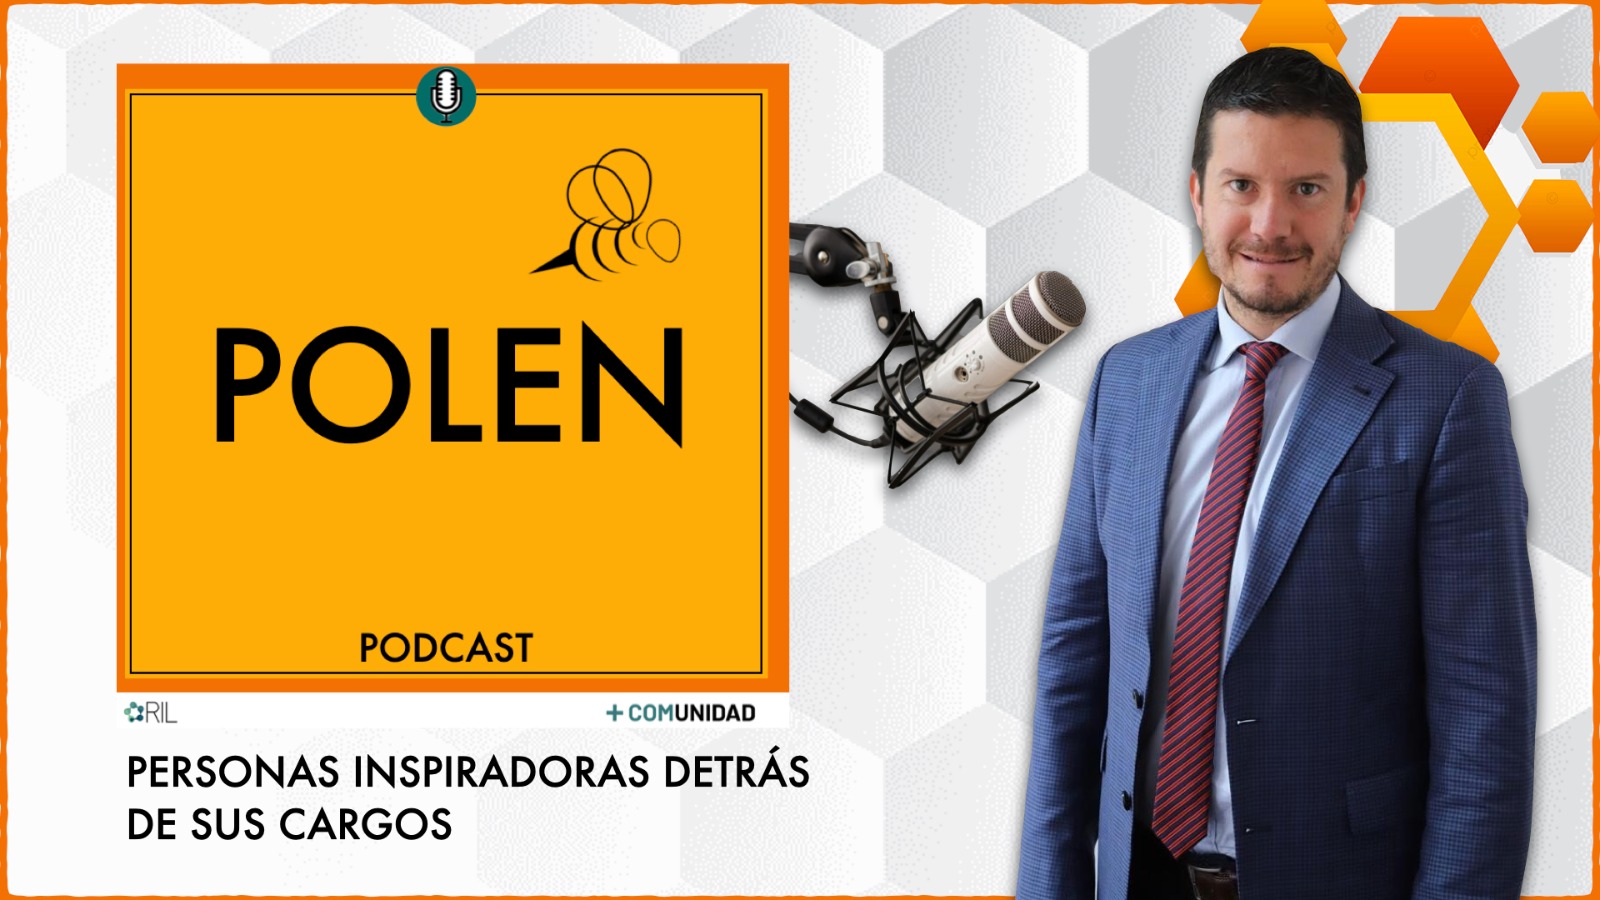 CAPÍTULO ESTRENOSe estrena el capítulo #17 de POLEN, el podcast de +COMUNIDAD